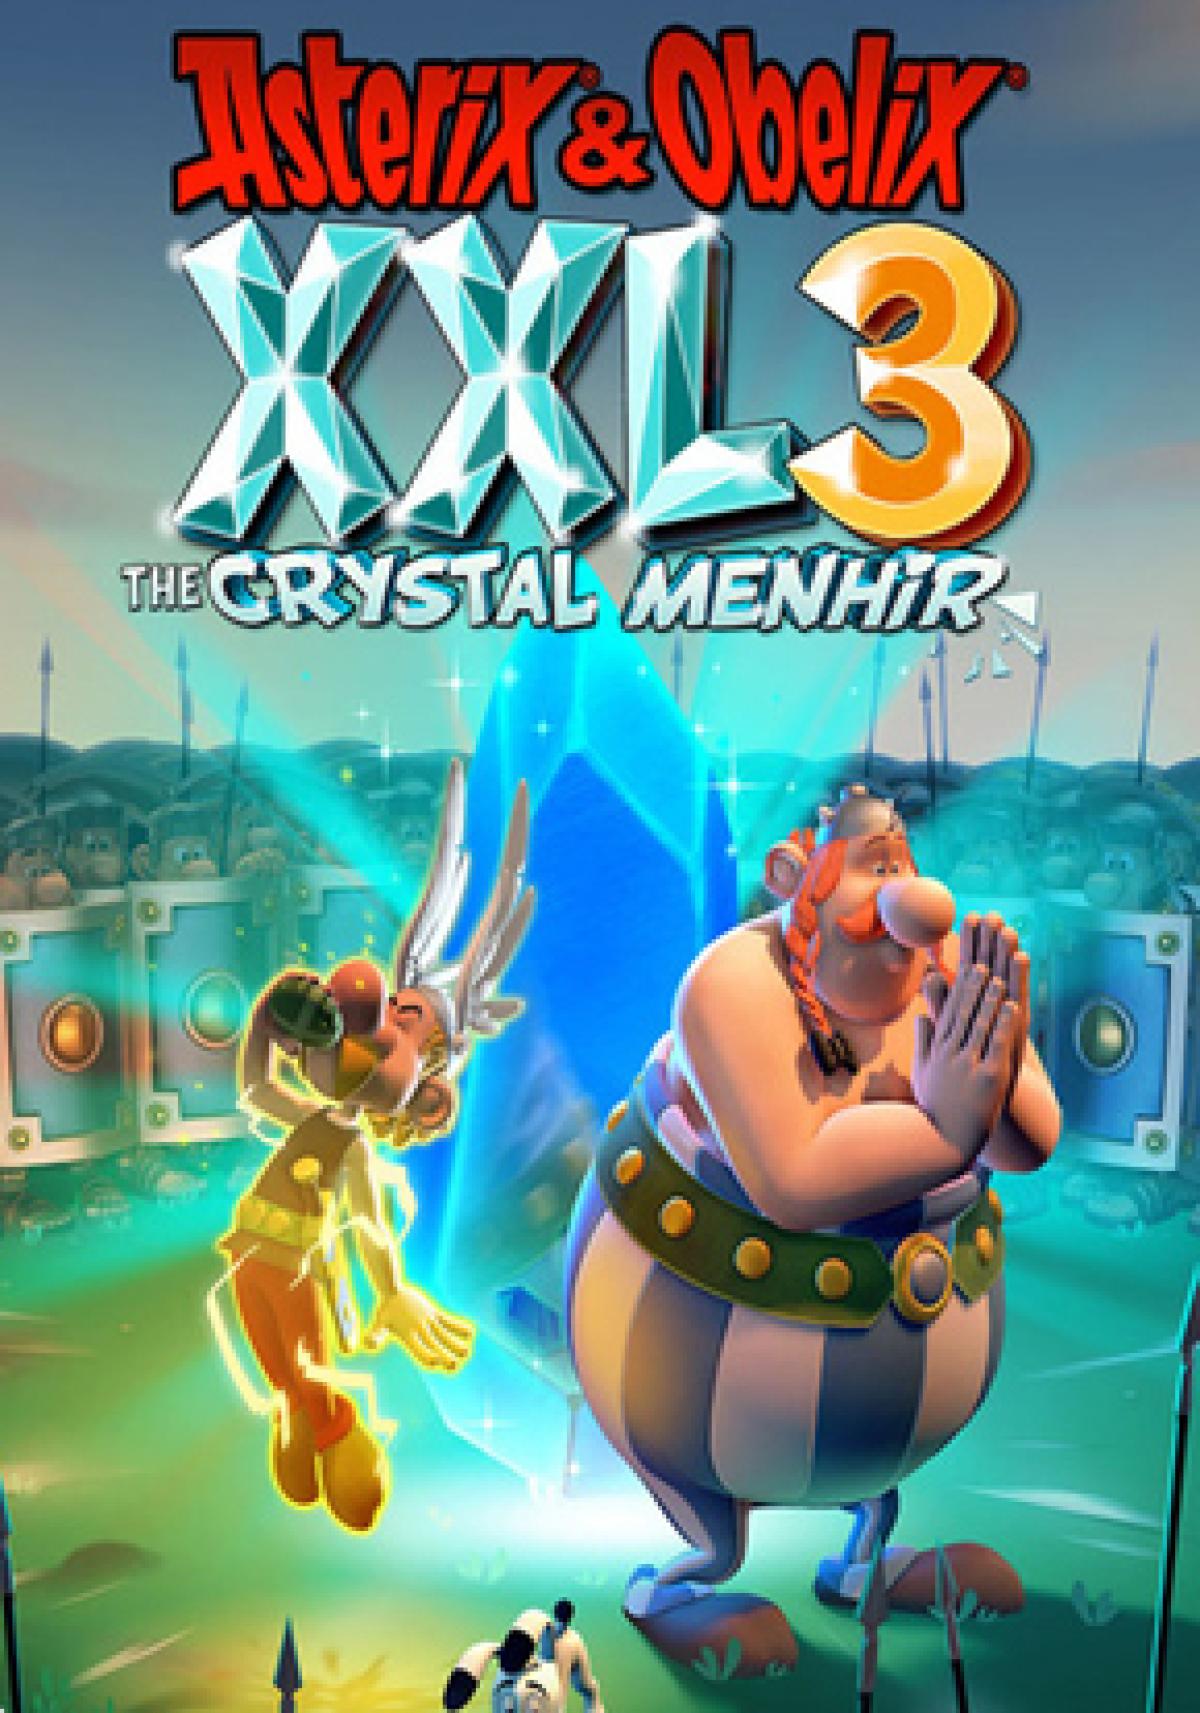 Análisis de Astérix Obélix XXL3: The Crystal Menhir para PS4, Switch y PC | Hobbyconsolas